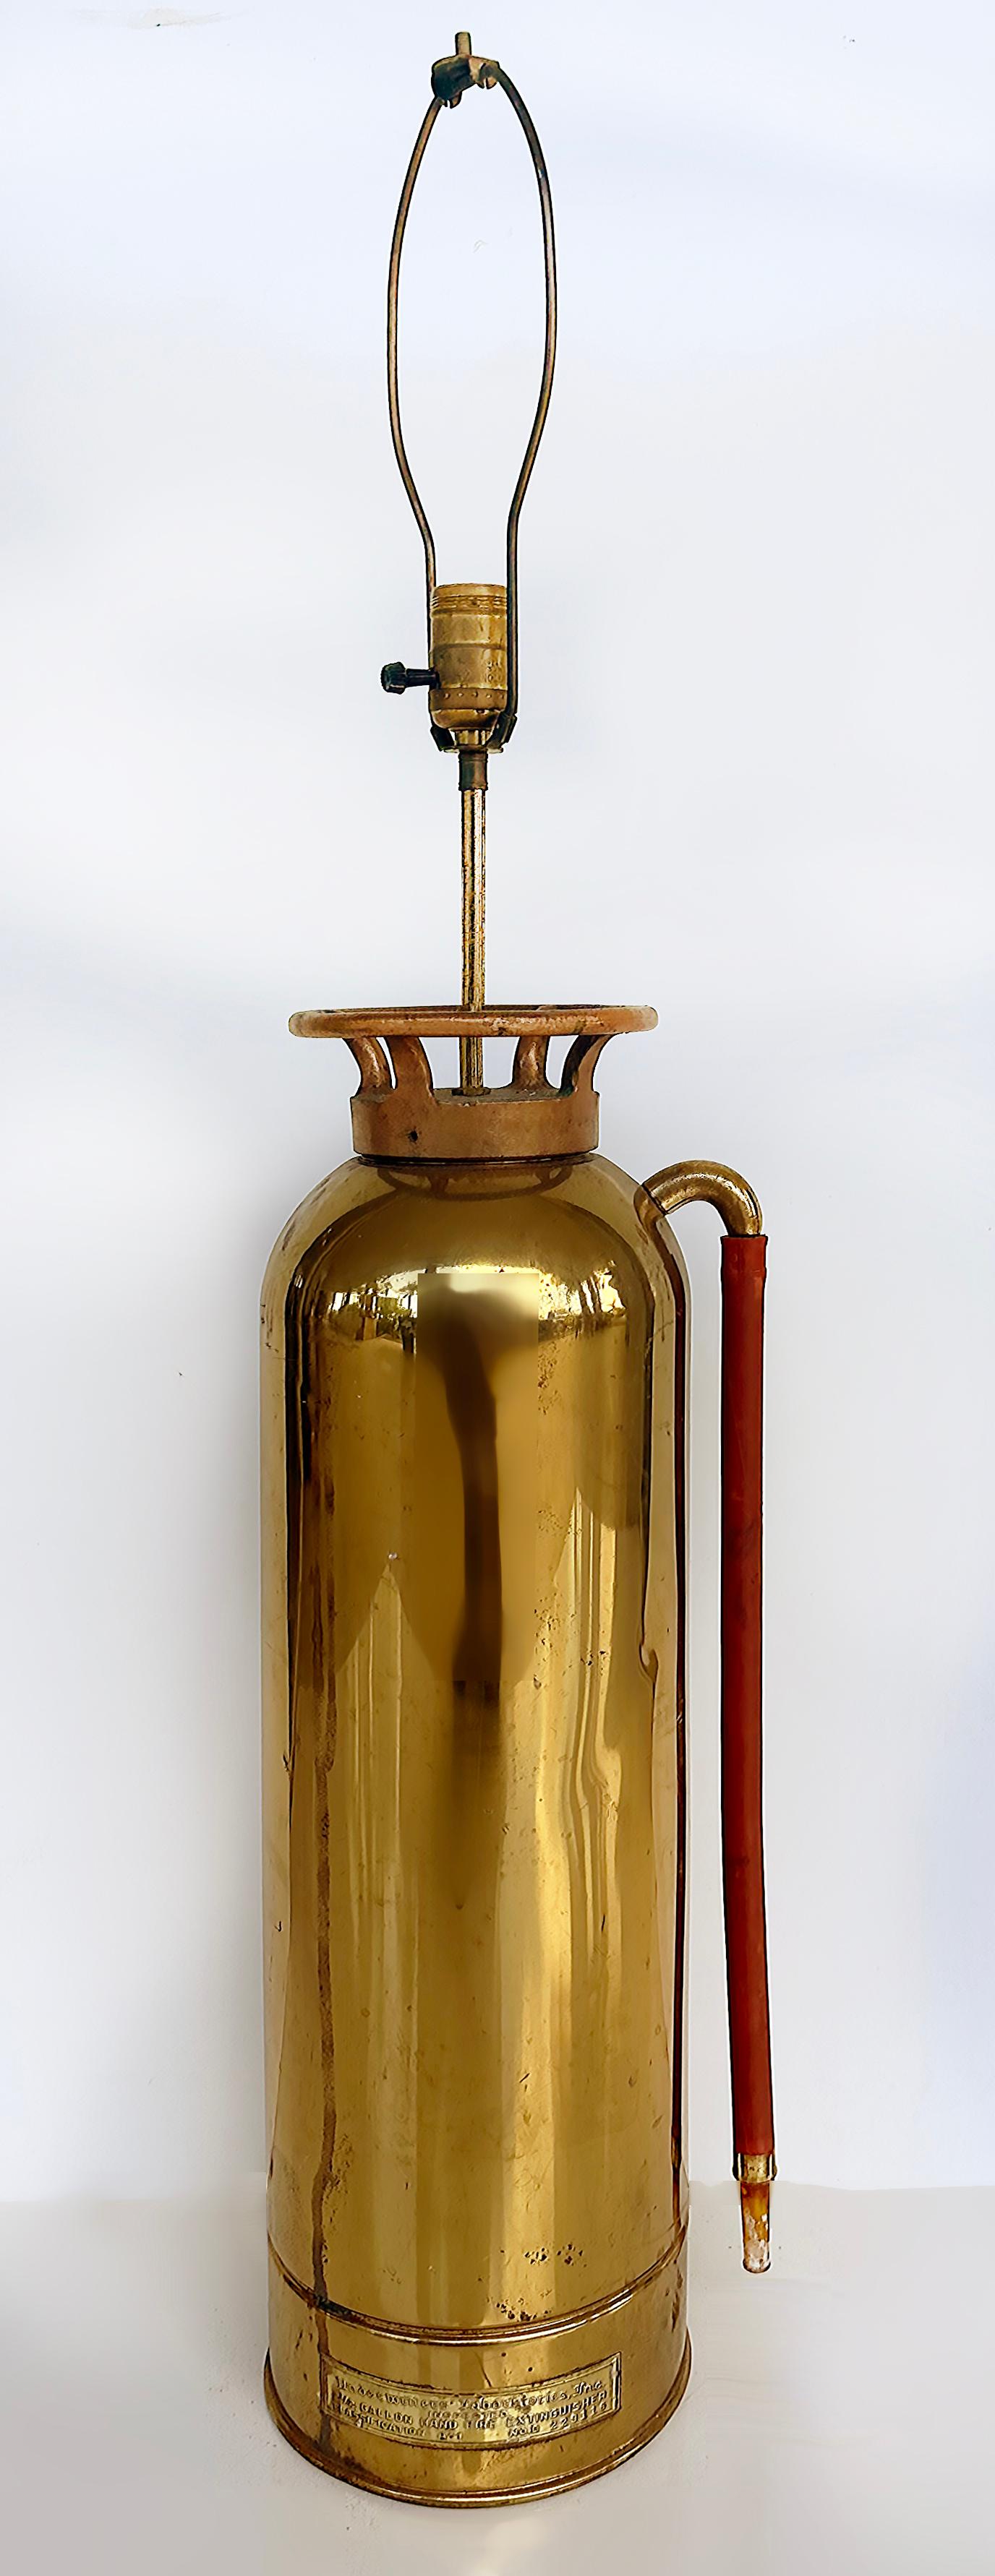 Antike Feuerlöscher Tischlampe aus Messing und Kupfer

Zum Verkauf angeboten wird ein antiker Feuerlöscher aus poliertem Messing und Kupfer, der Mitte des 20. Jahrhunderts in eine Tischlampe umgewandelt wurde. Der Feuerlöscher ist mit einer Plakette